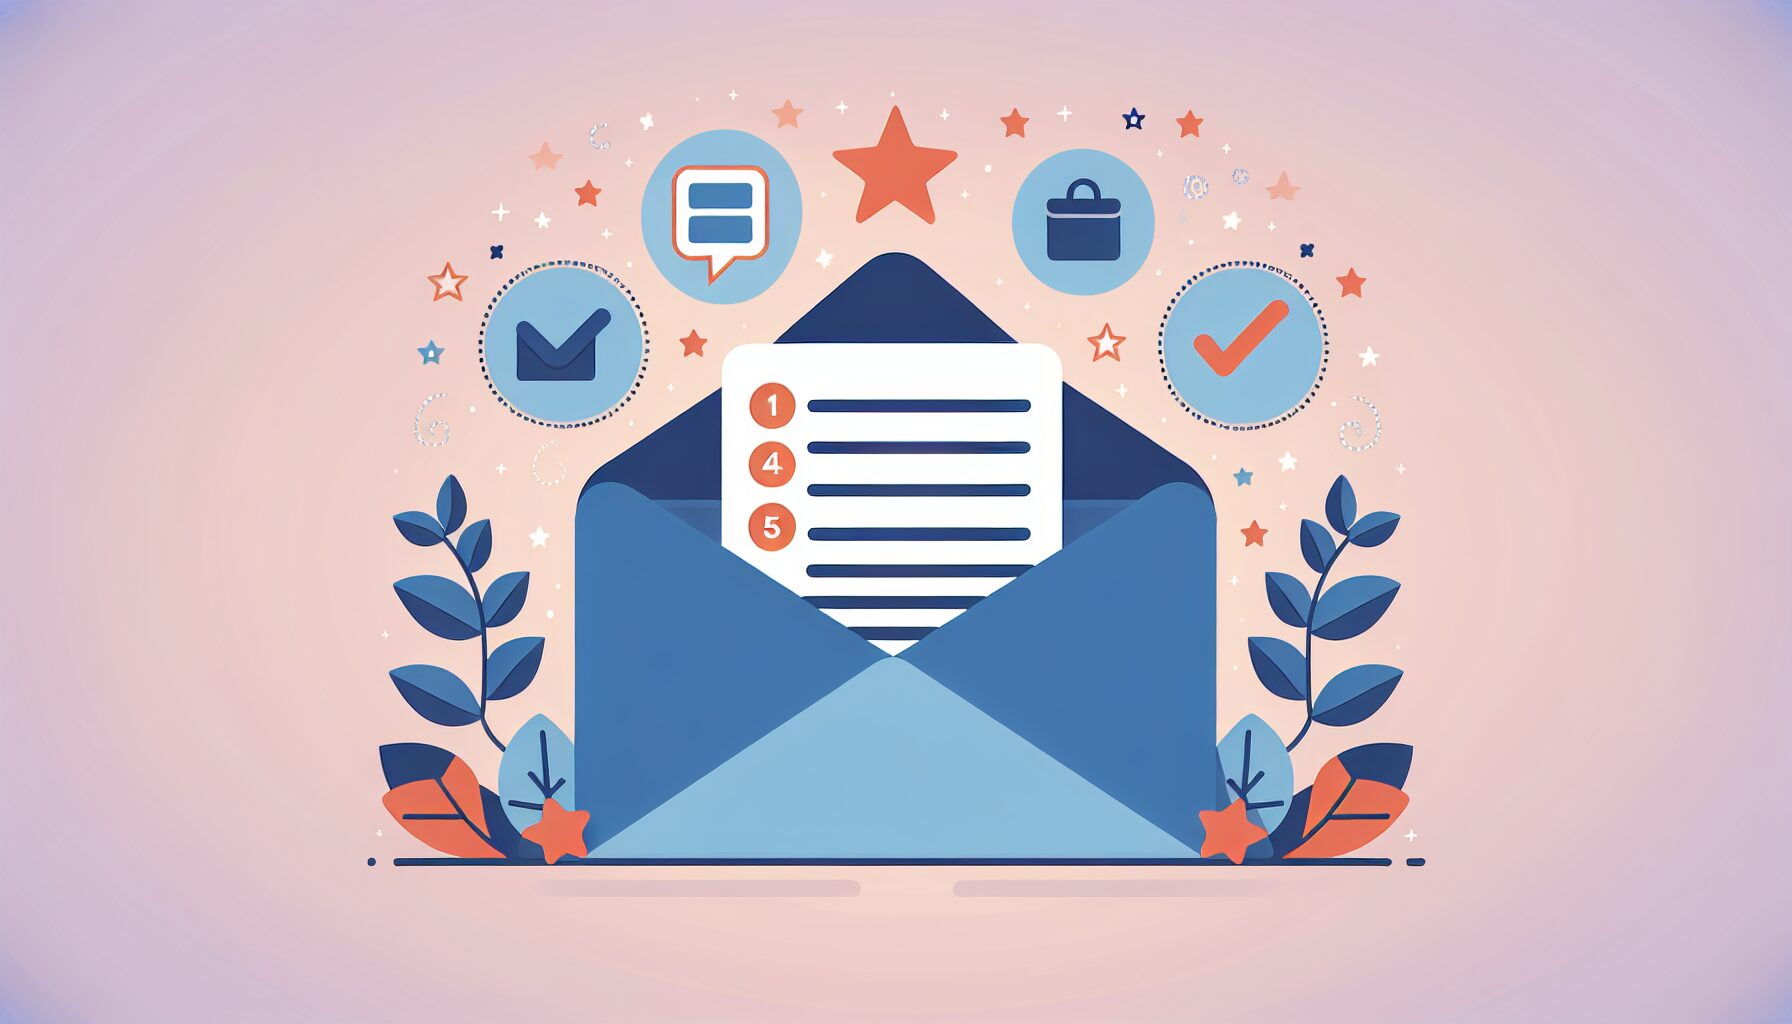 リマインドメールの効果的な書き方と、顧客満足度を高める5つのテクニック